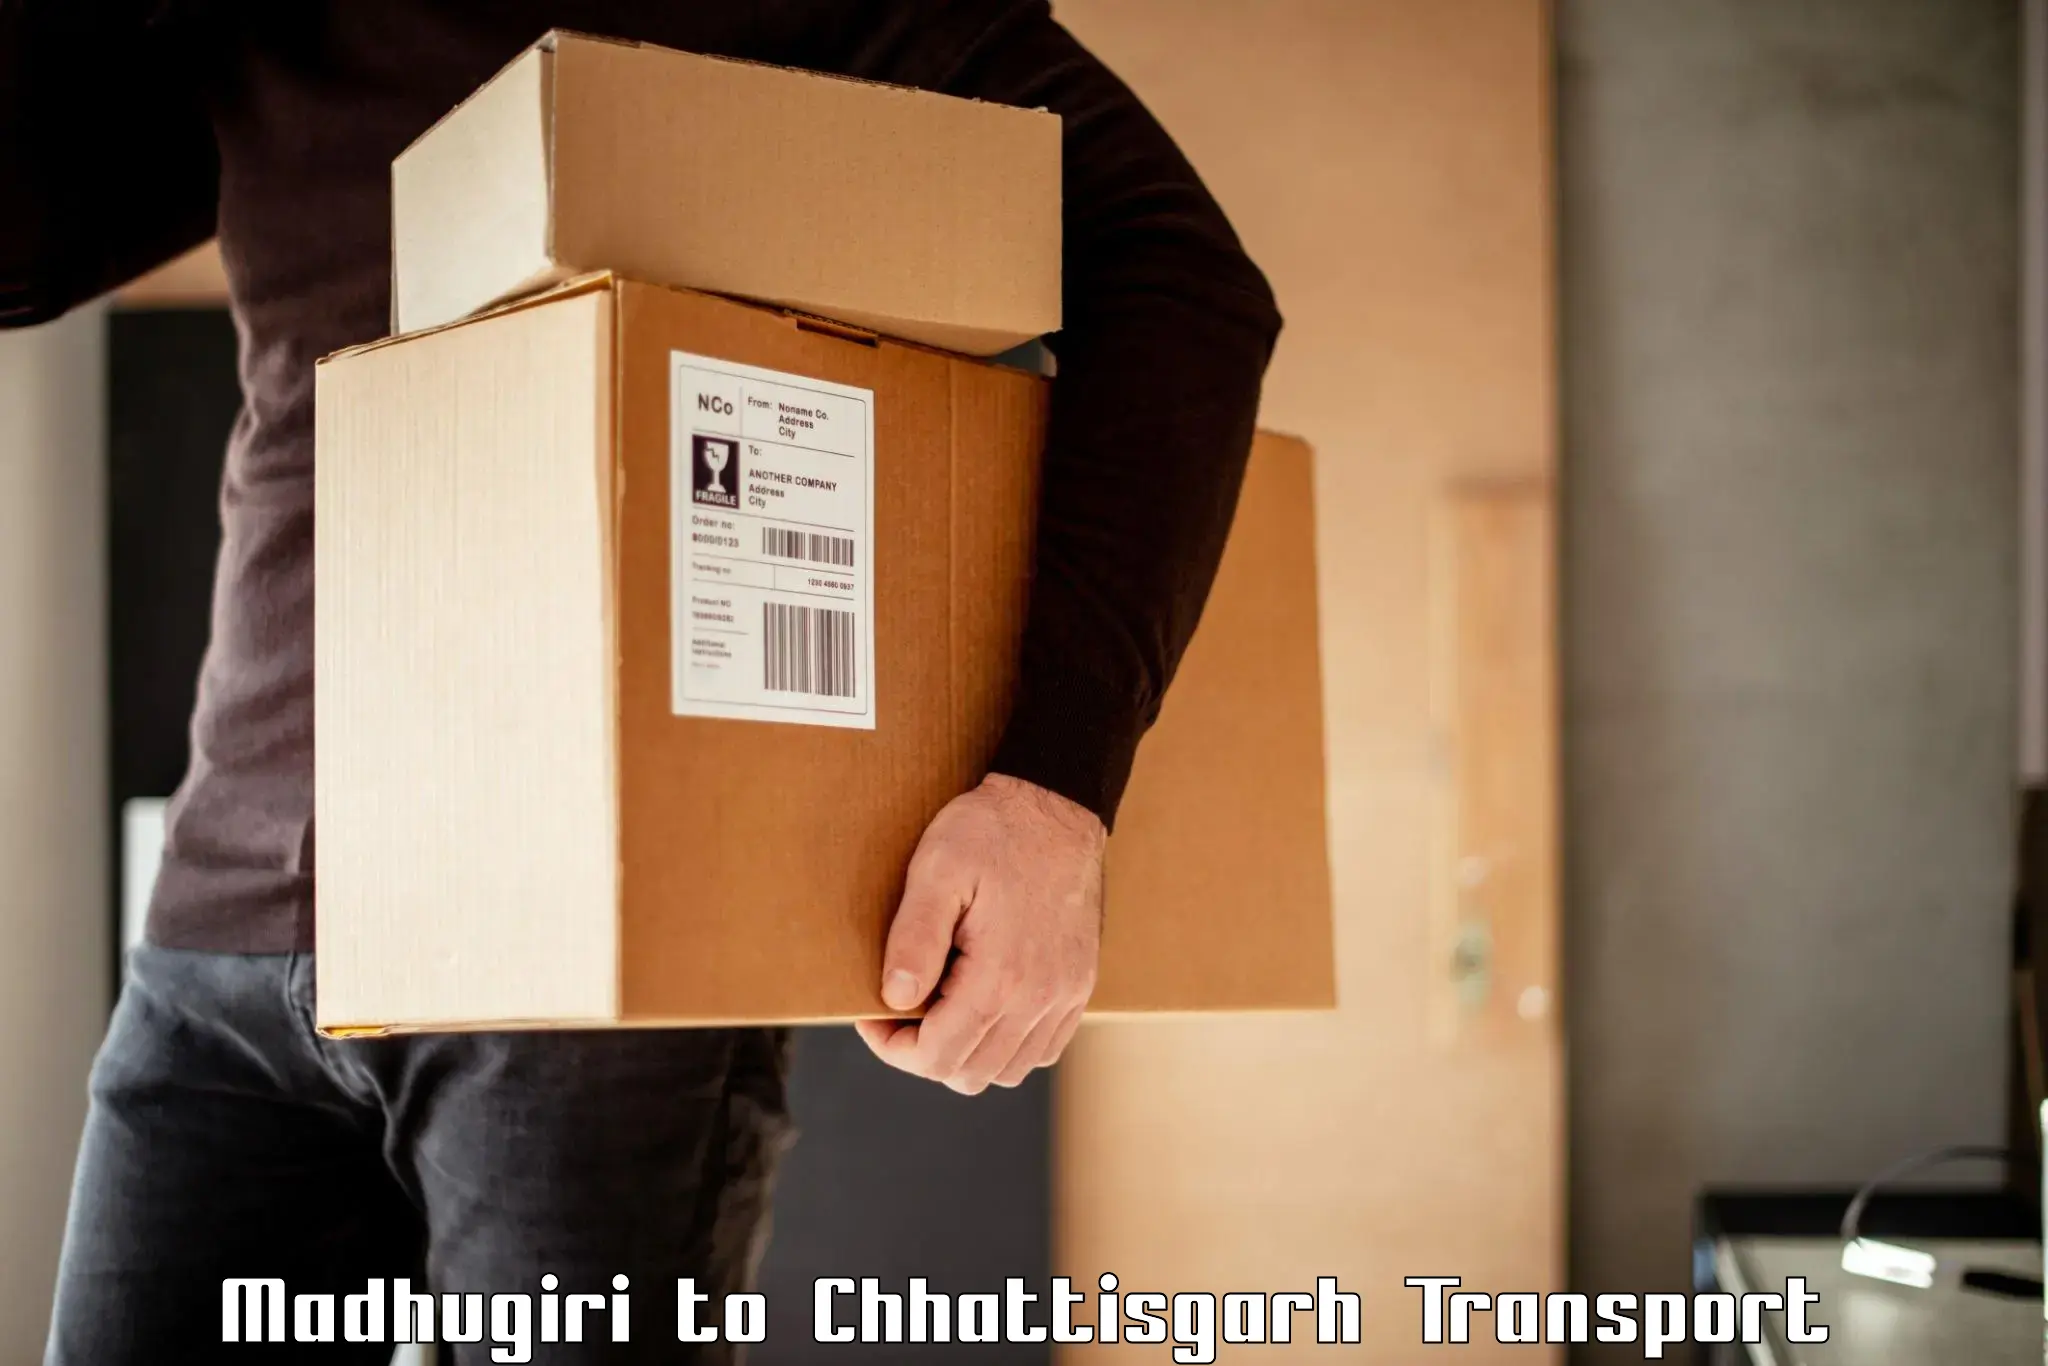 Daily parcel service transport Madhugiri to Mandhar